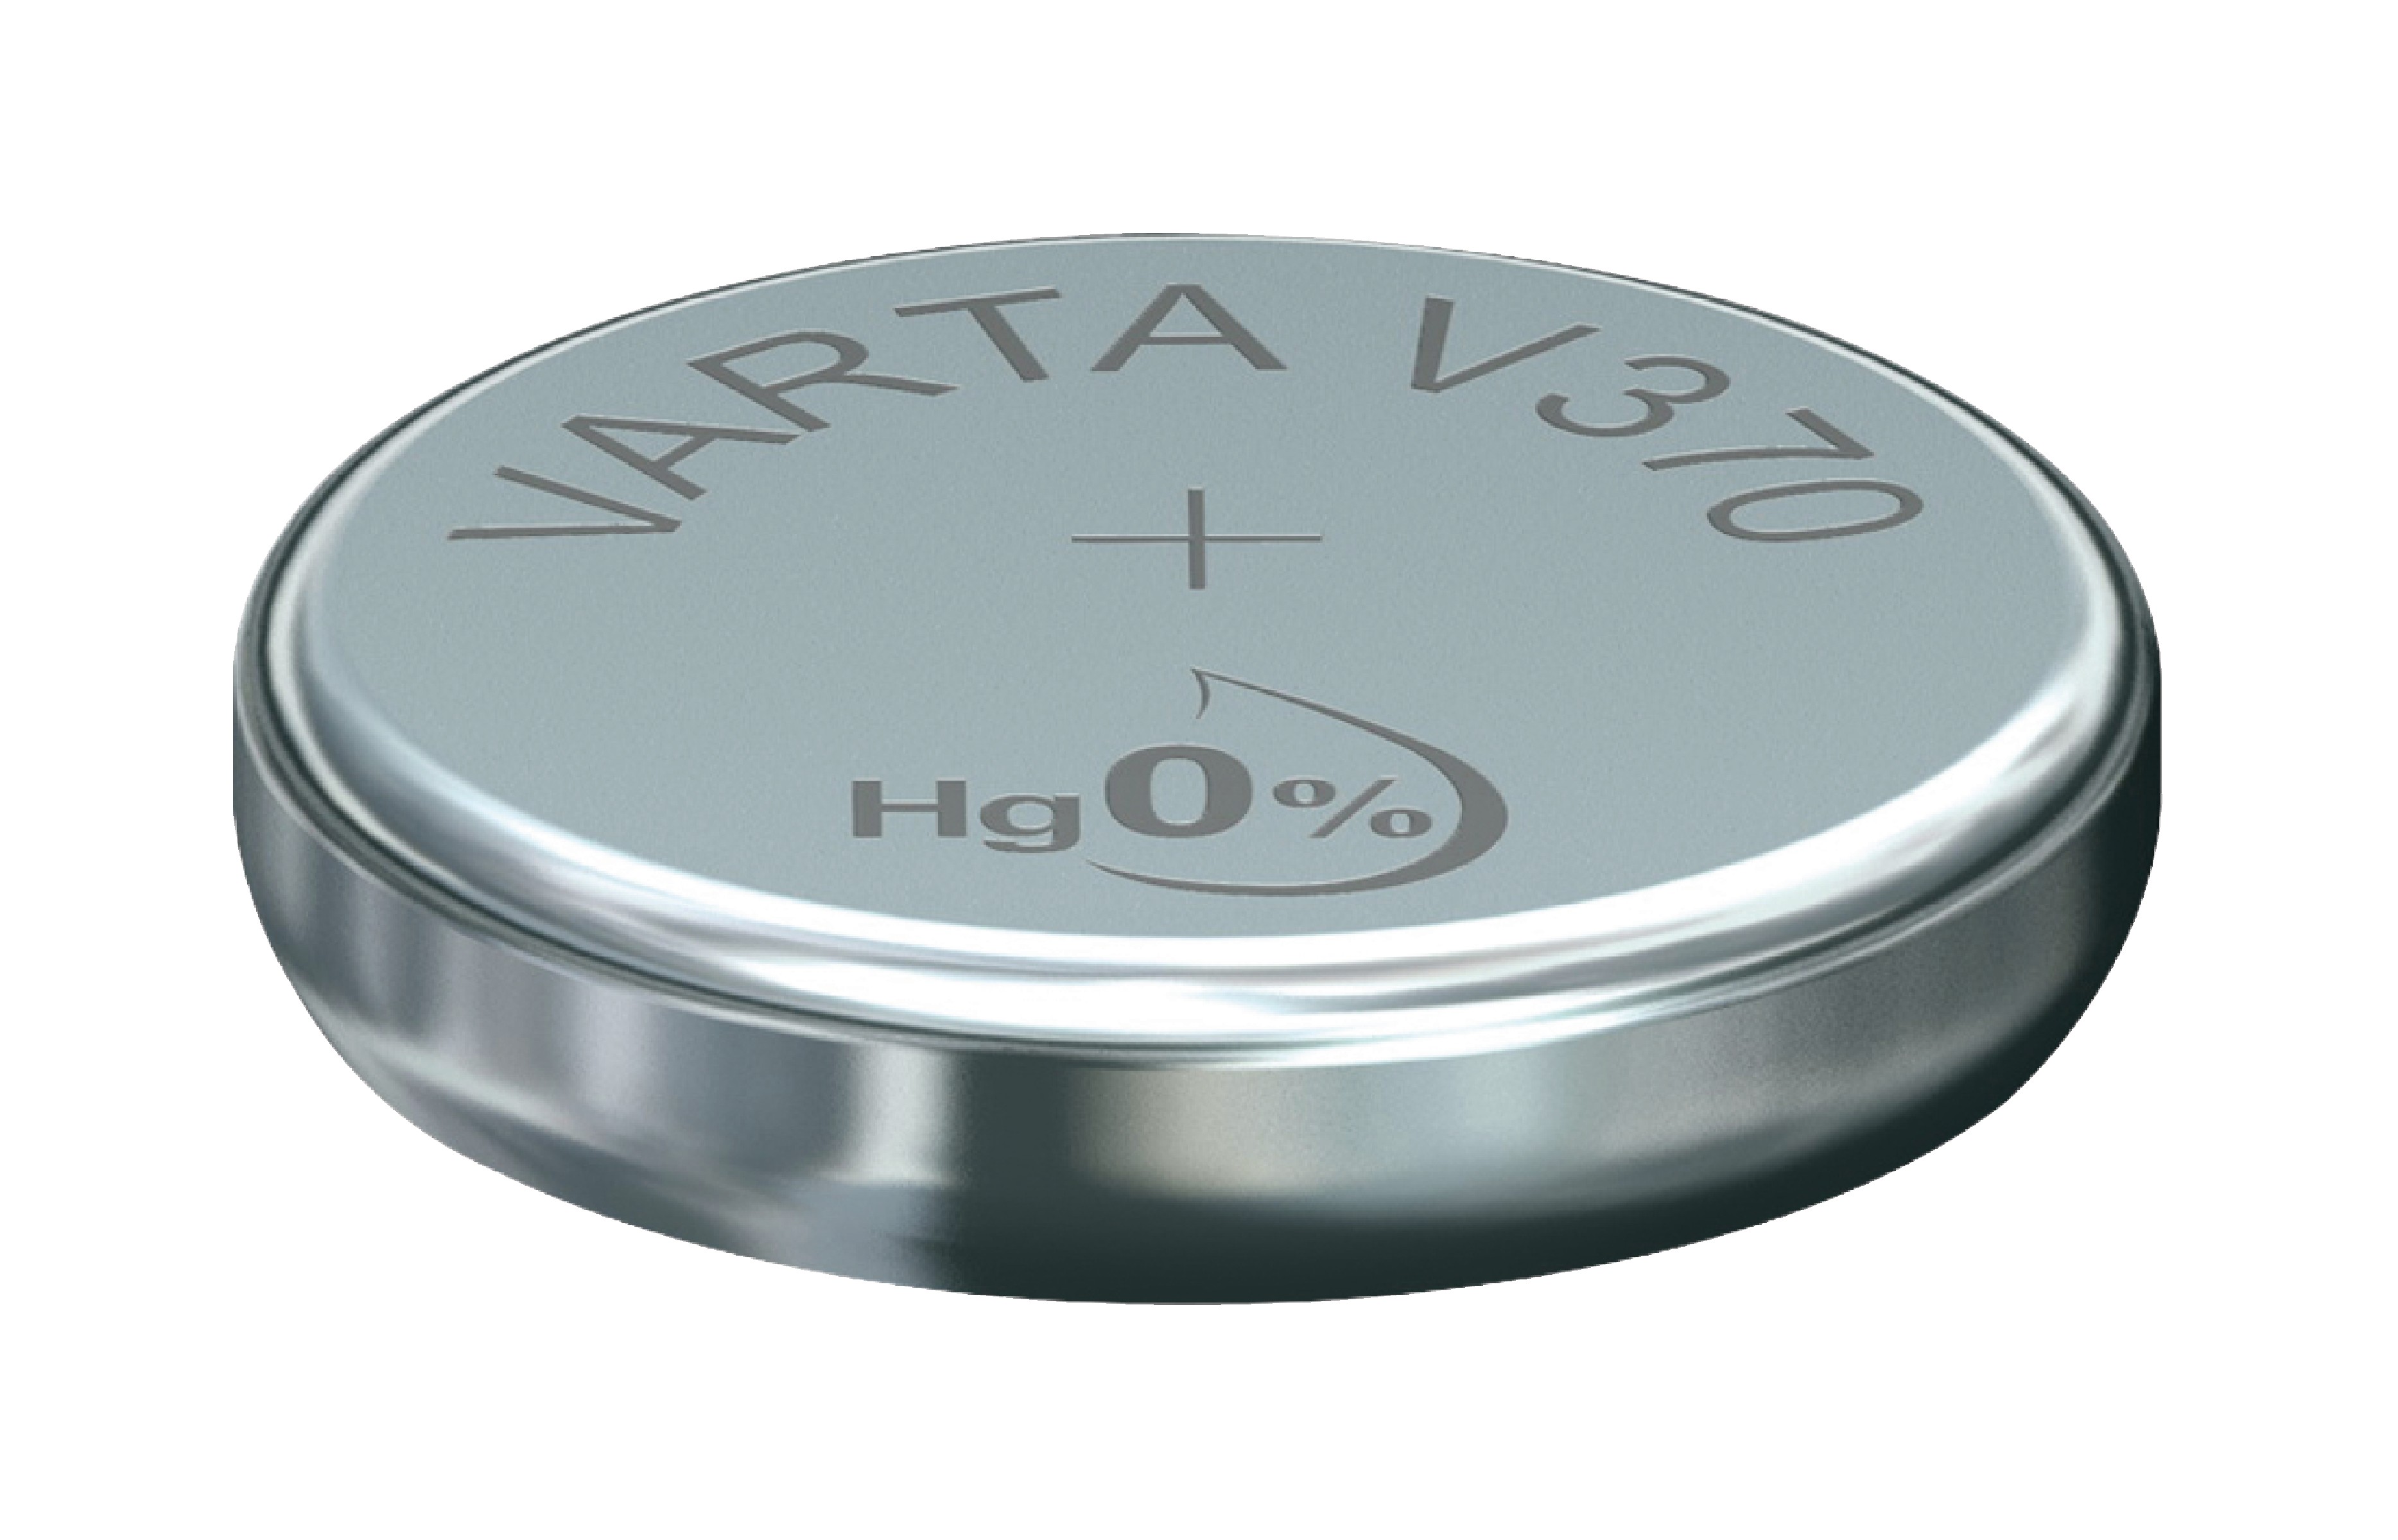 Stříbro-oxidová hodinková baterie SR69/V370 1.55 V 30 mAh, VARTA-V370